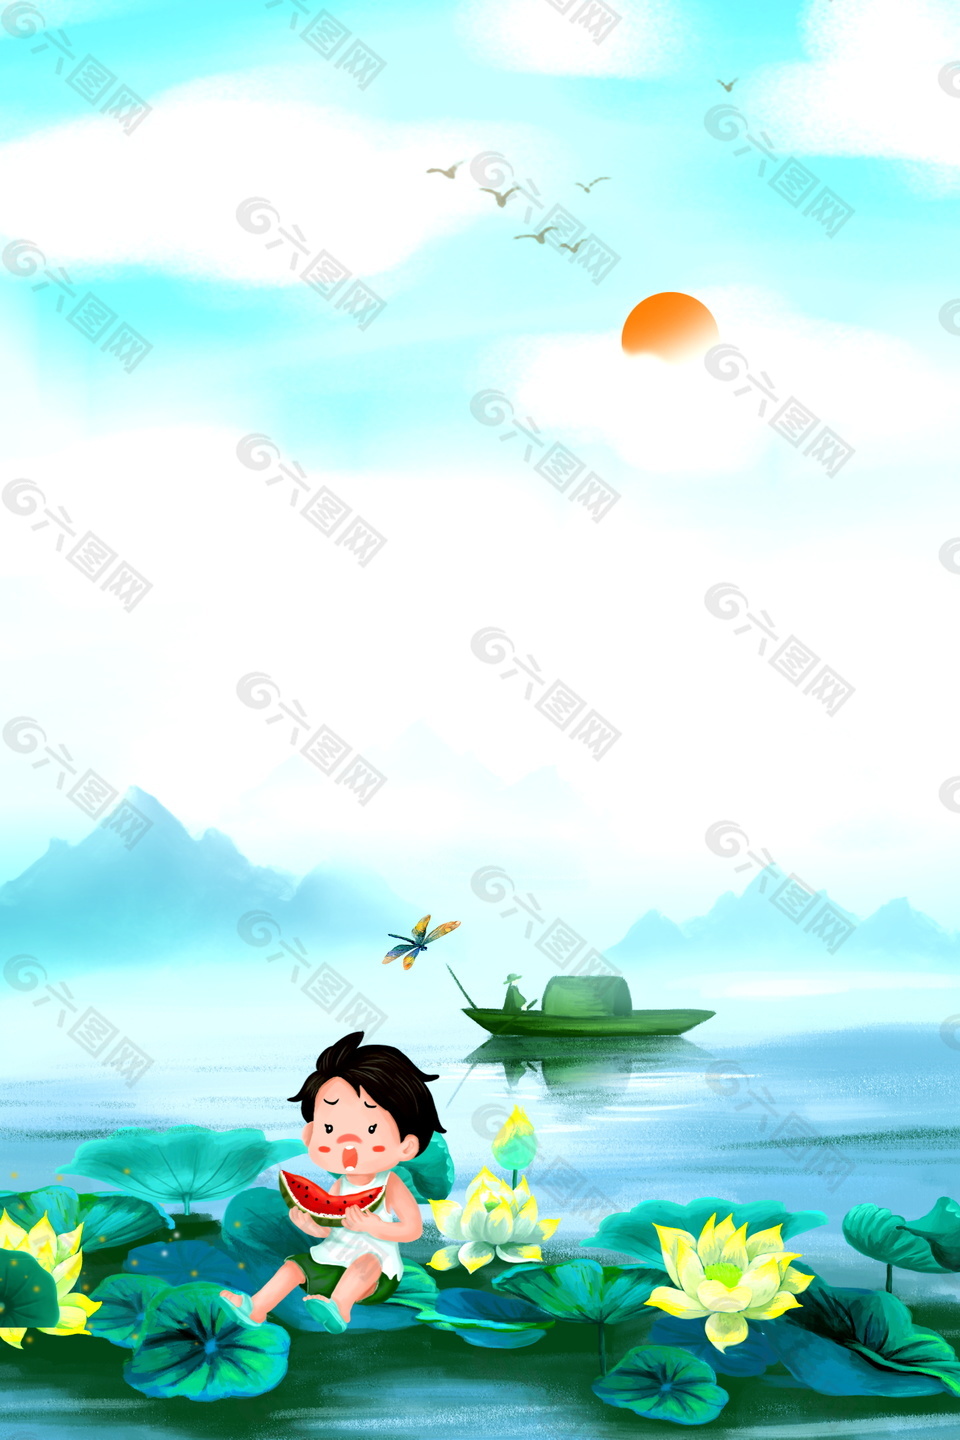 彩绘荷塘吃西瓜的男孩海报背景设计